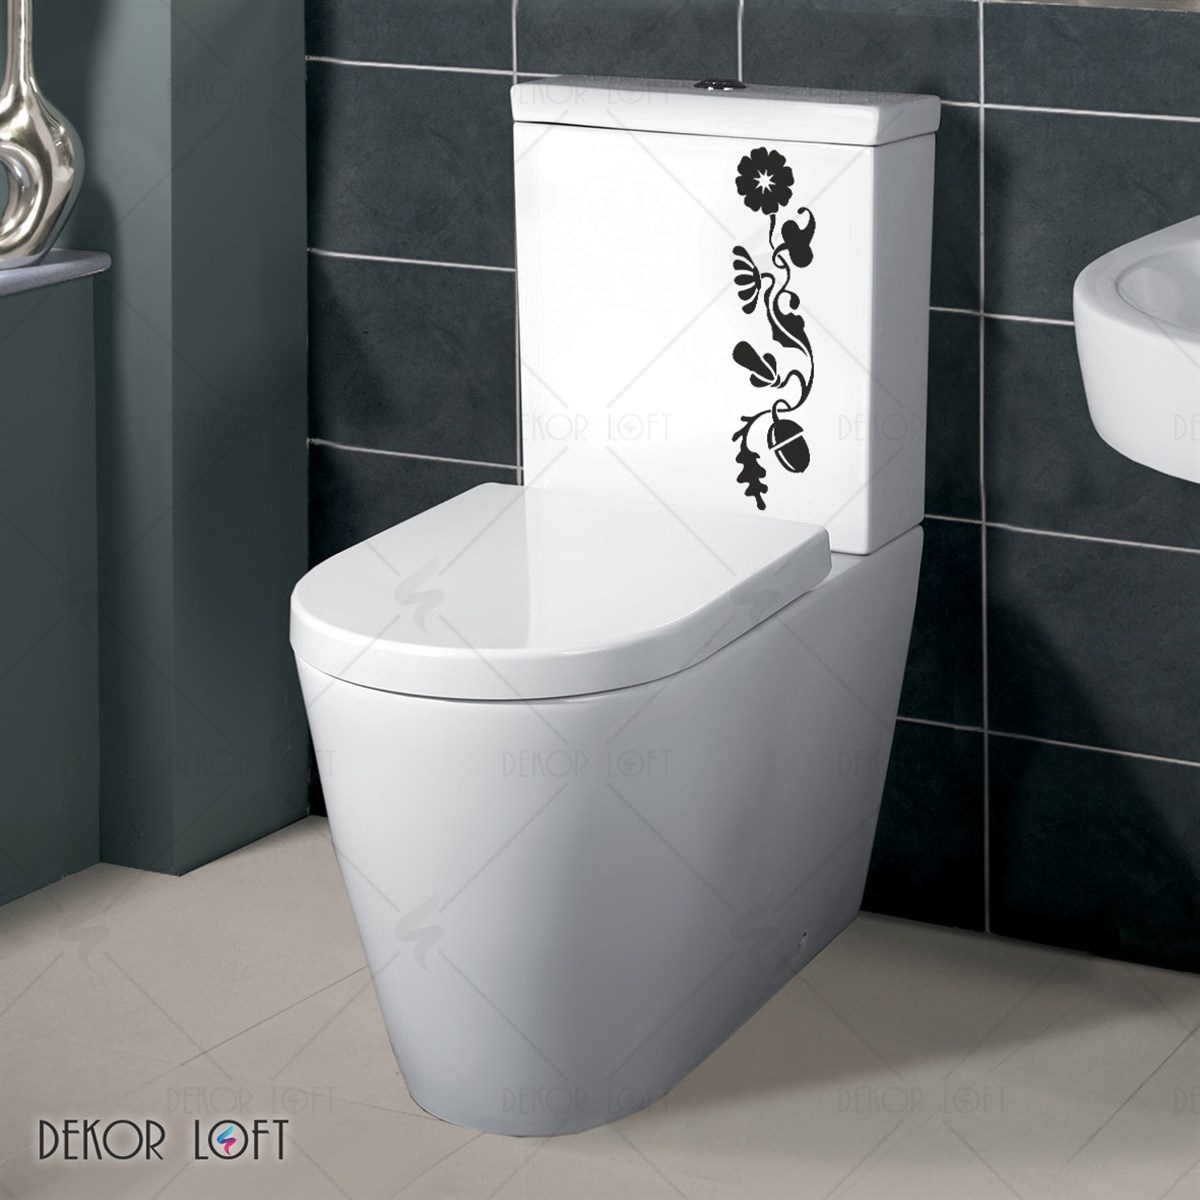 DekorLoft Tuvalet Sticker WC-1514